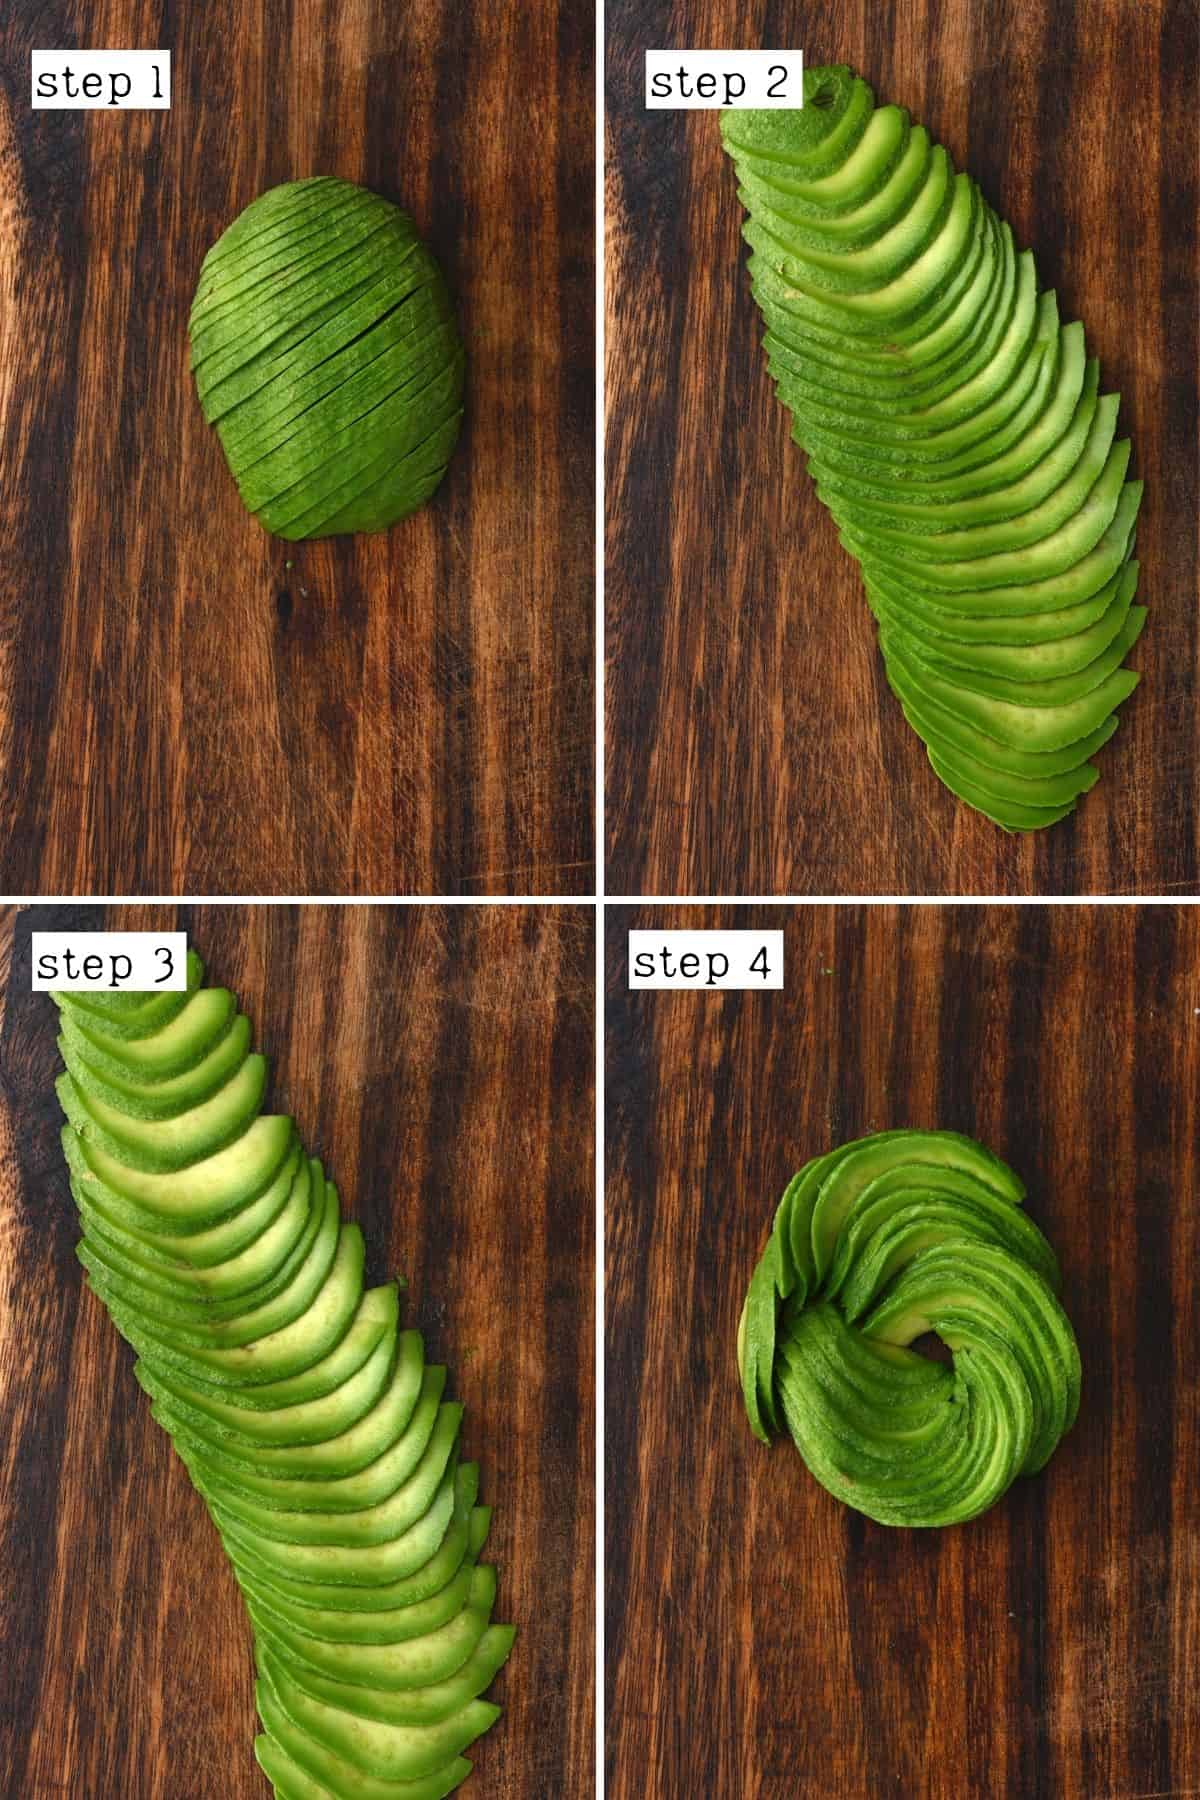 Steps for slicing avocado